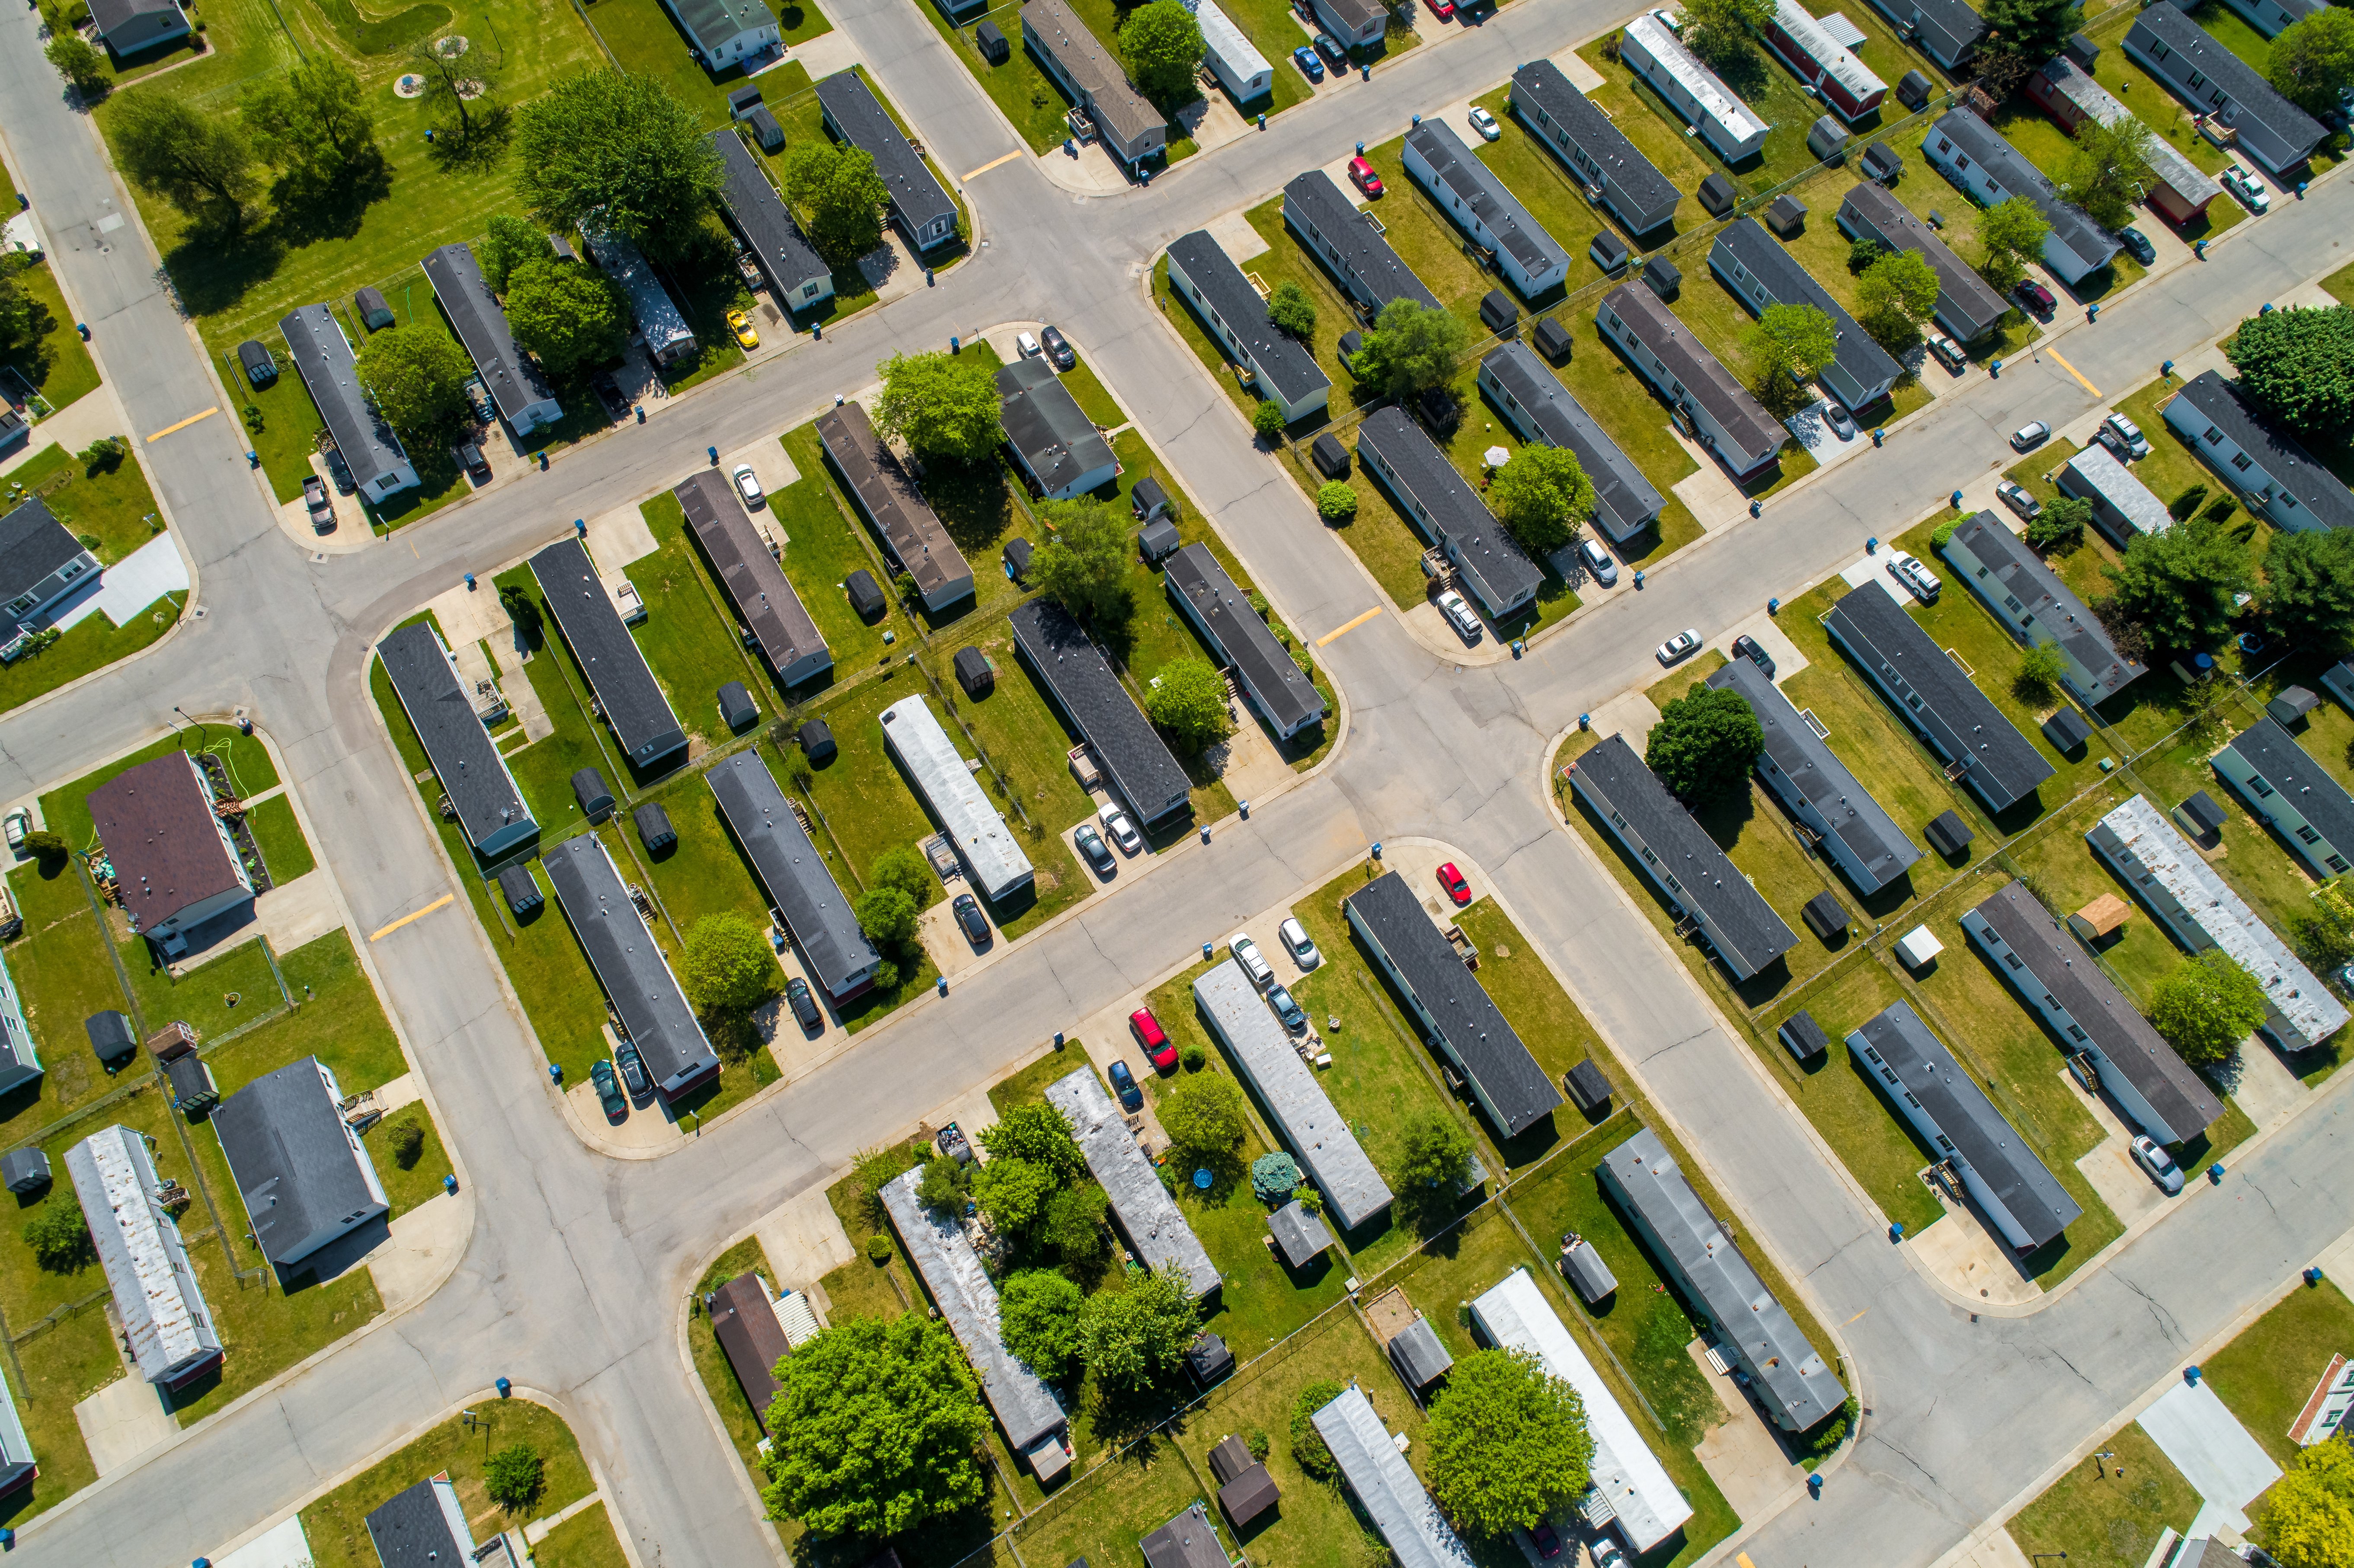 Manufactured Housing Communities Gaining Ground